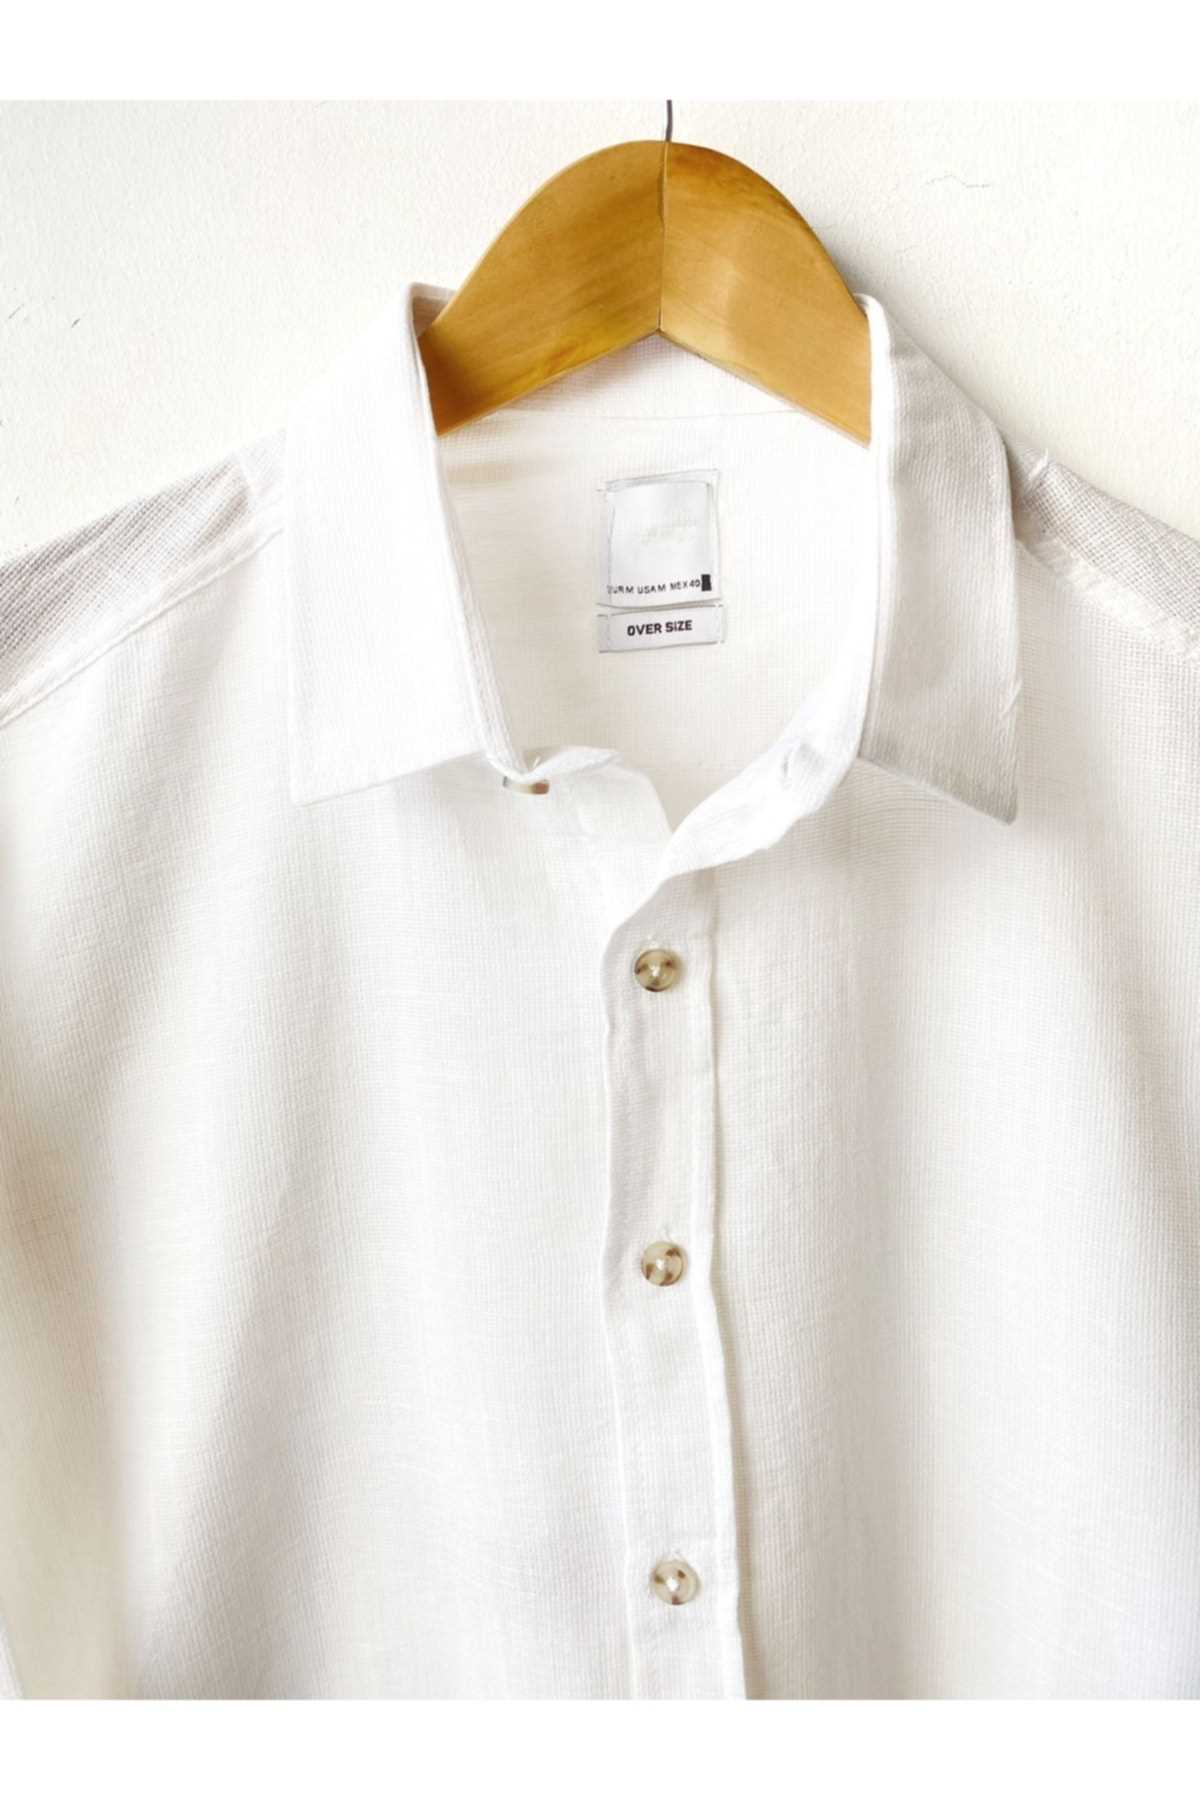 خرید پستی پیراهن آستین کوتاه مردانه شیک برند Hazhers رنگ سفید ty239816020